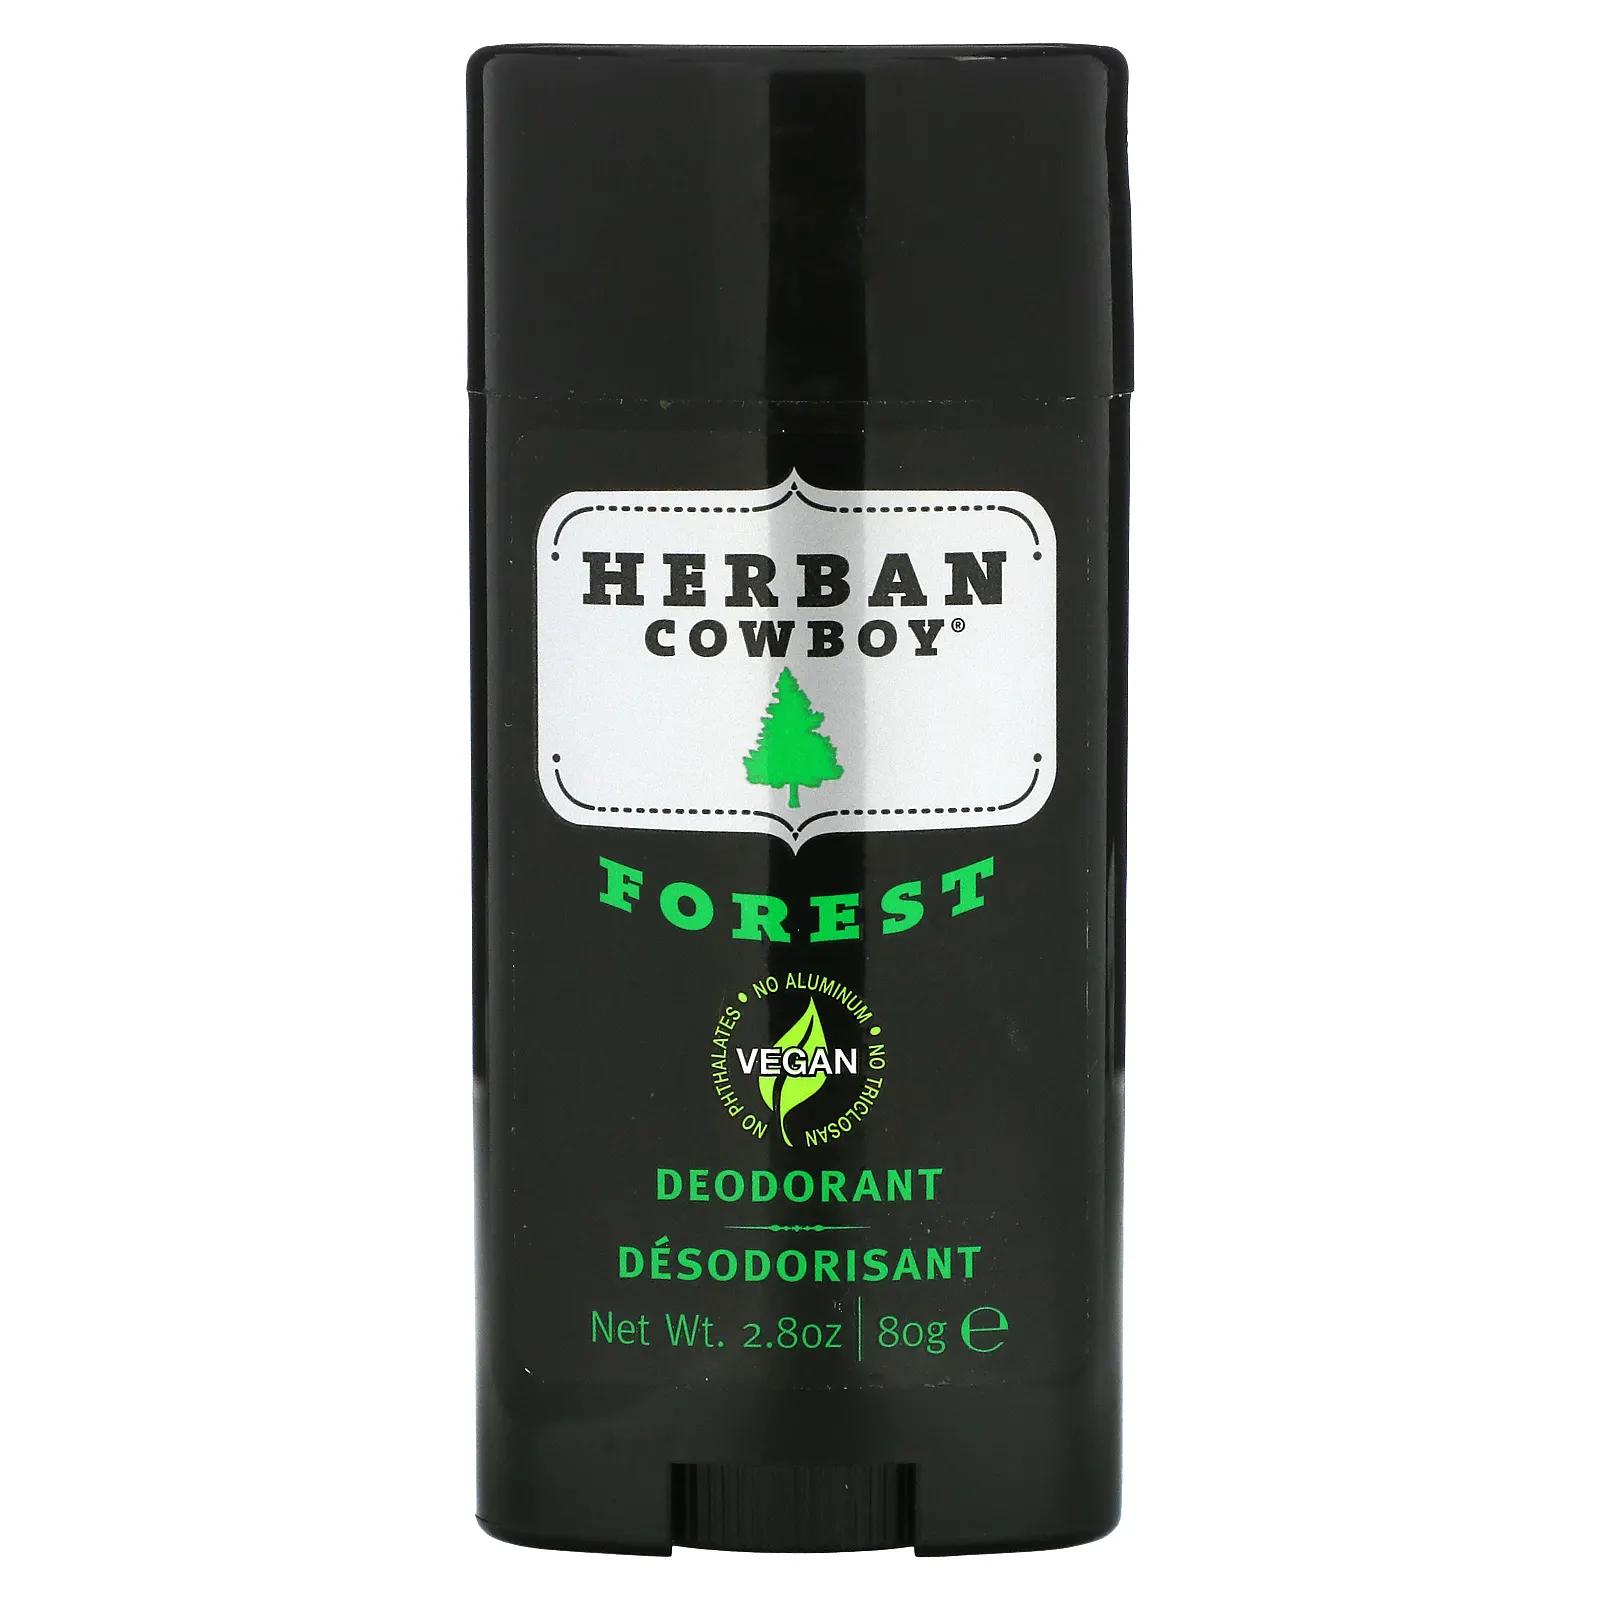 Herban Cowboy Forest дезодорант с максимальной защитой 80 г herban cowboy пилированное мыло запах леса 5 унц 140 г